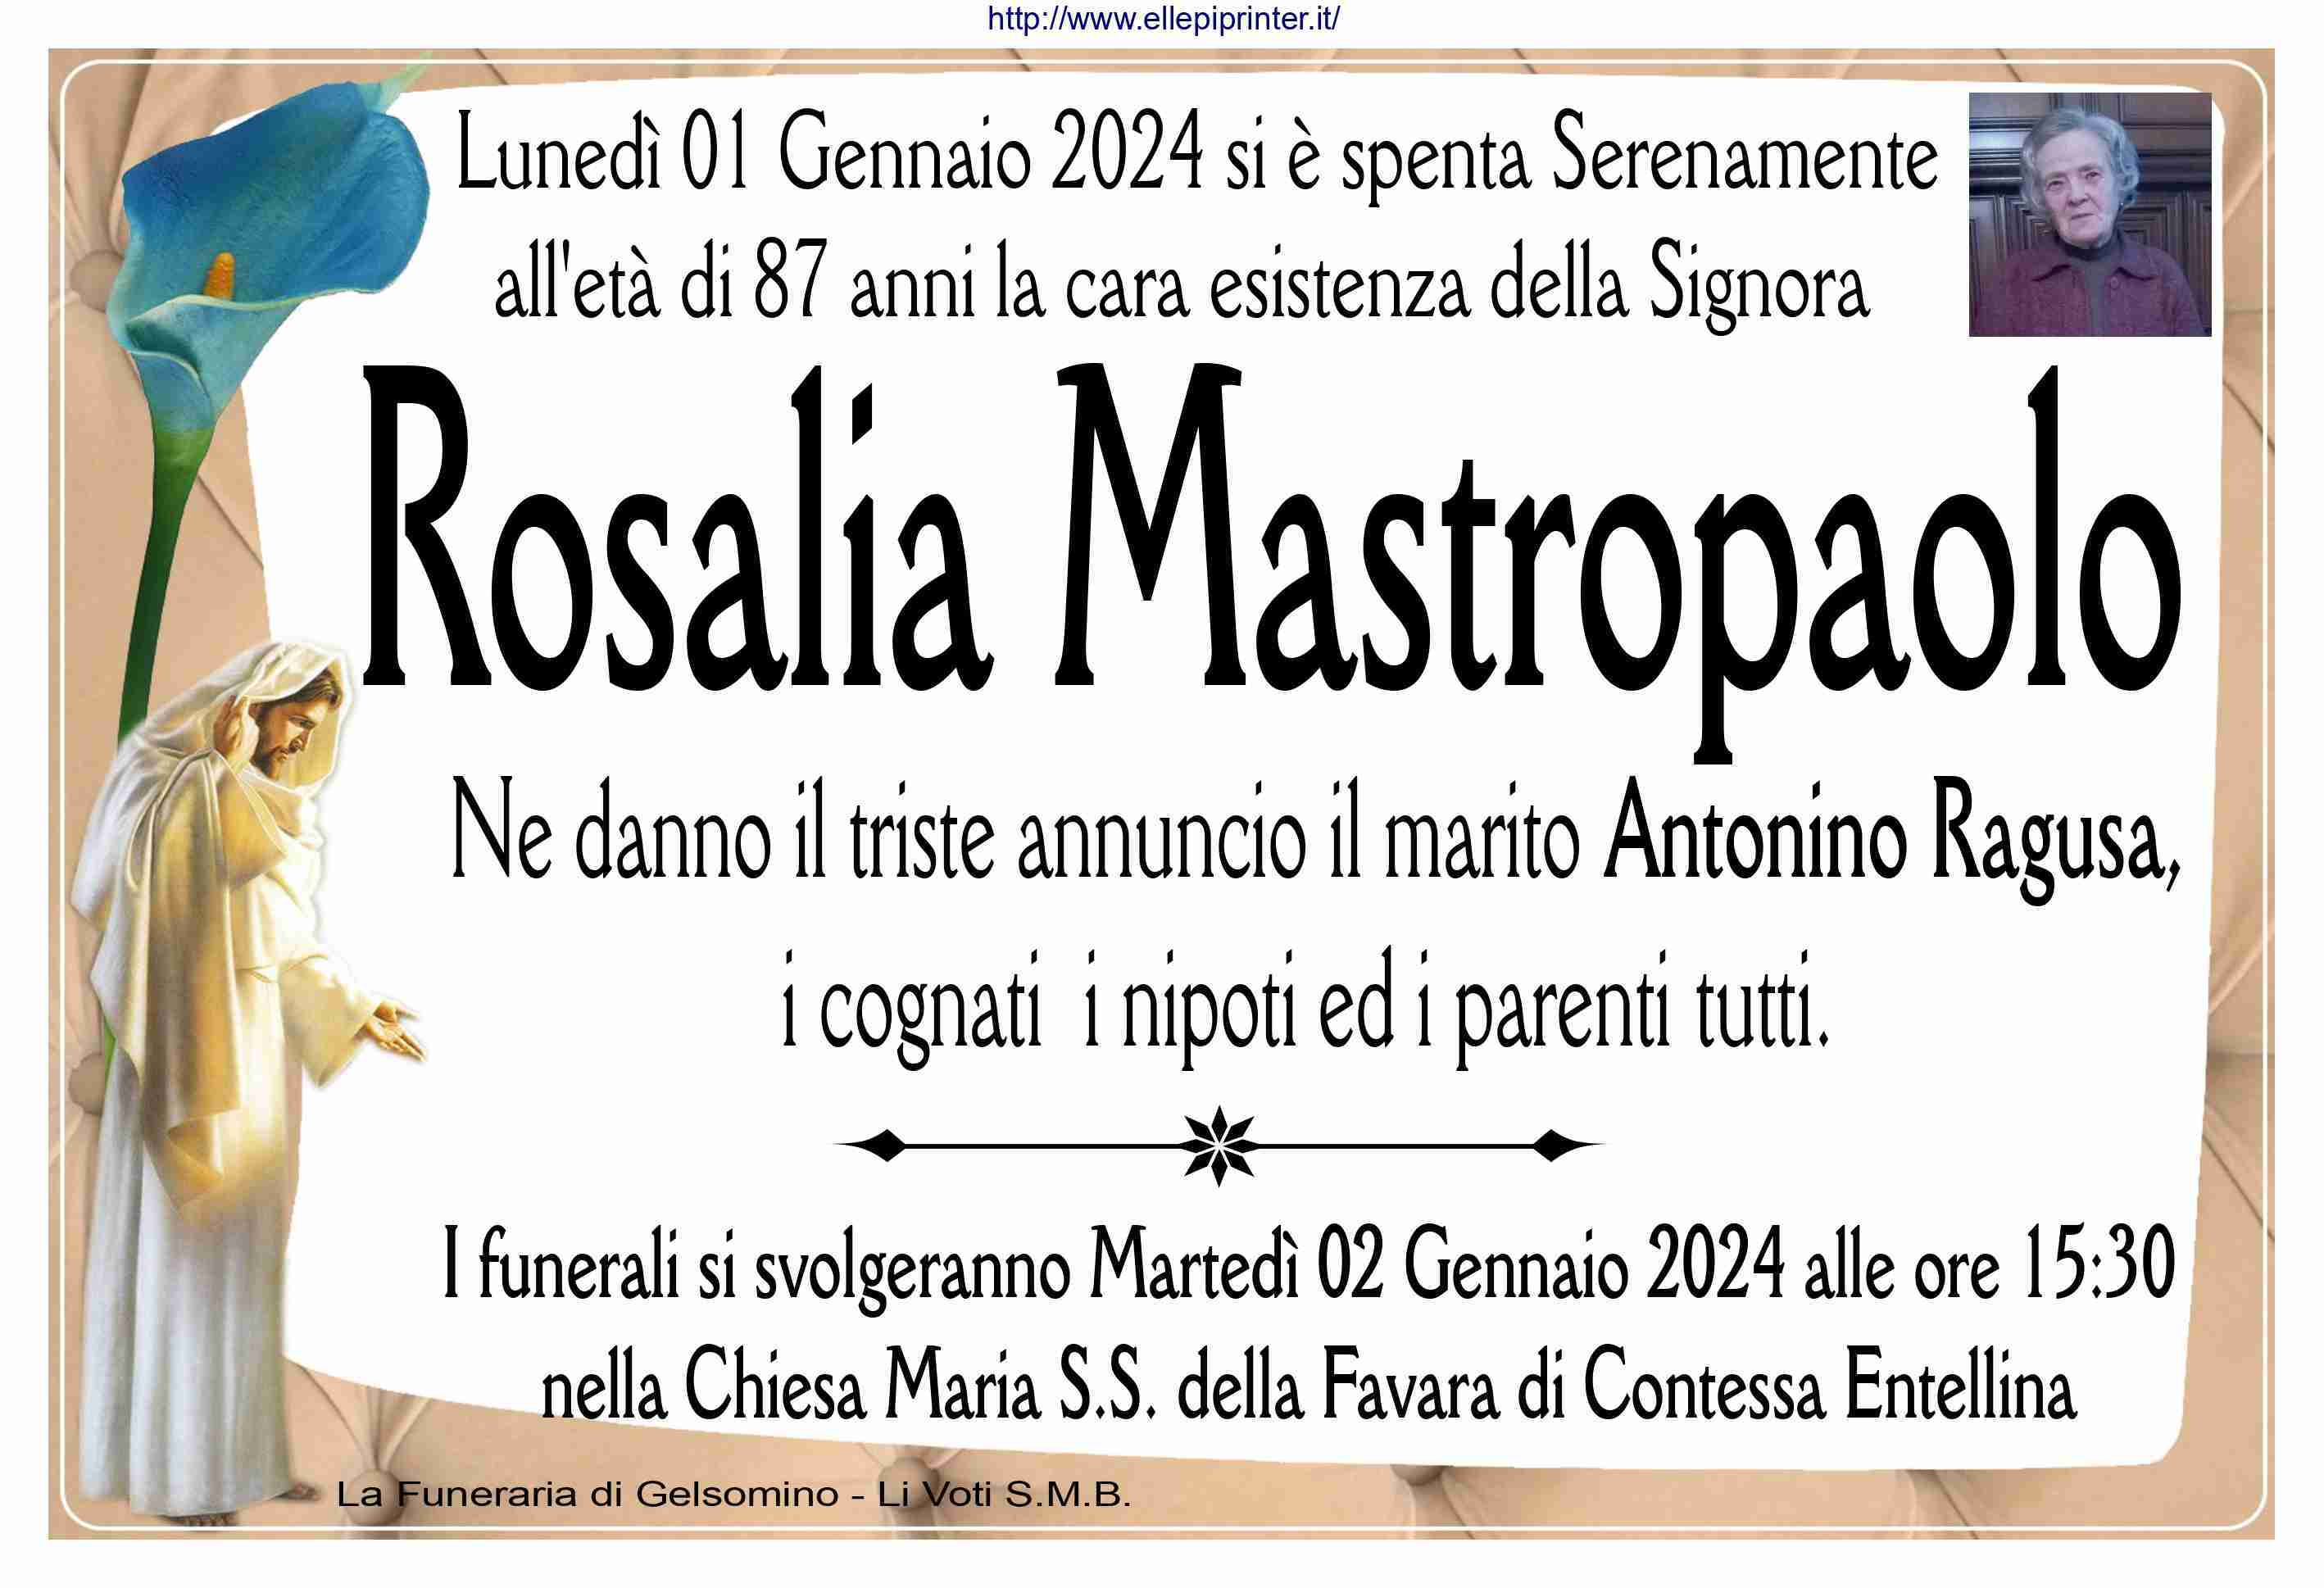 Rosalia Mastropaolo